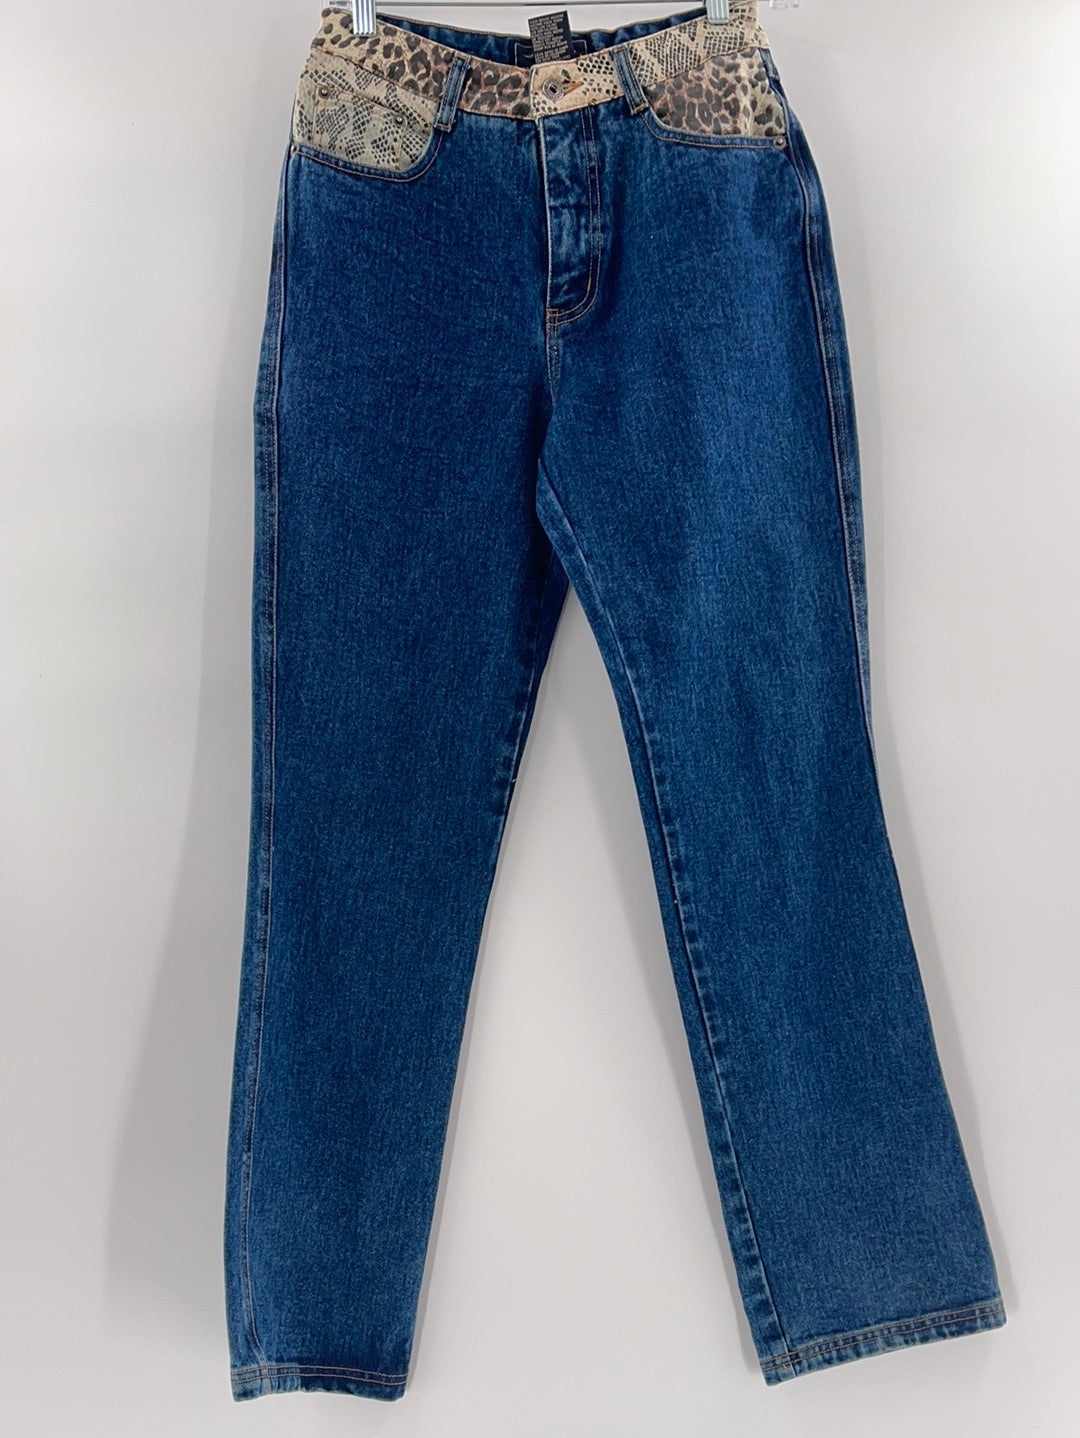 Route 66 Vintage Denim Jeans (Size 3/4)